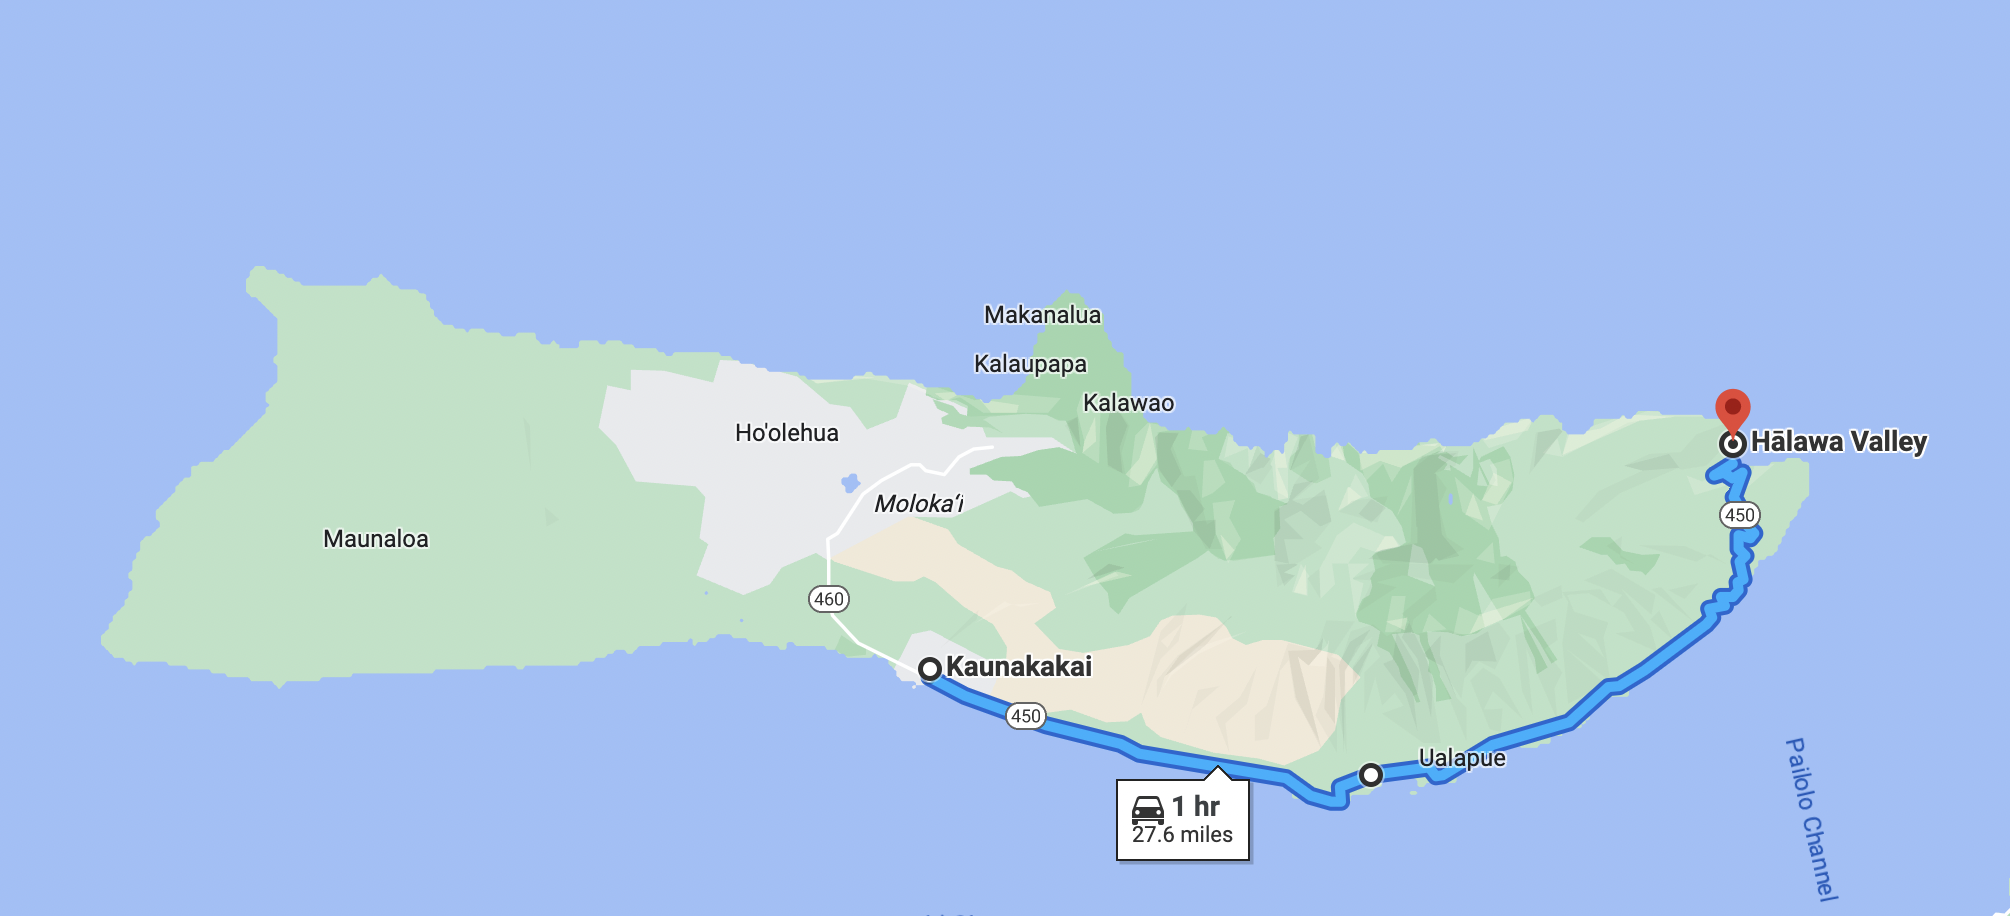 motorcycle routes in molokai island hawaii